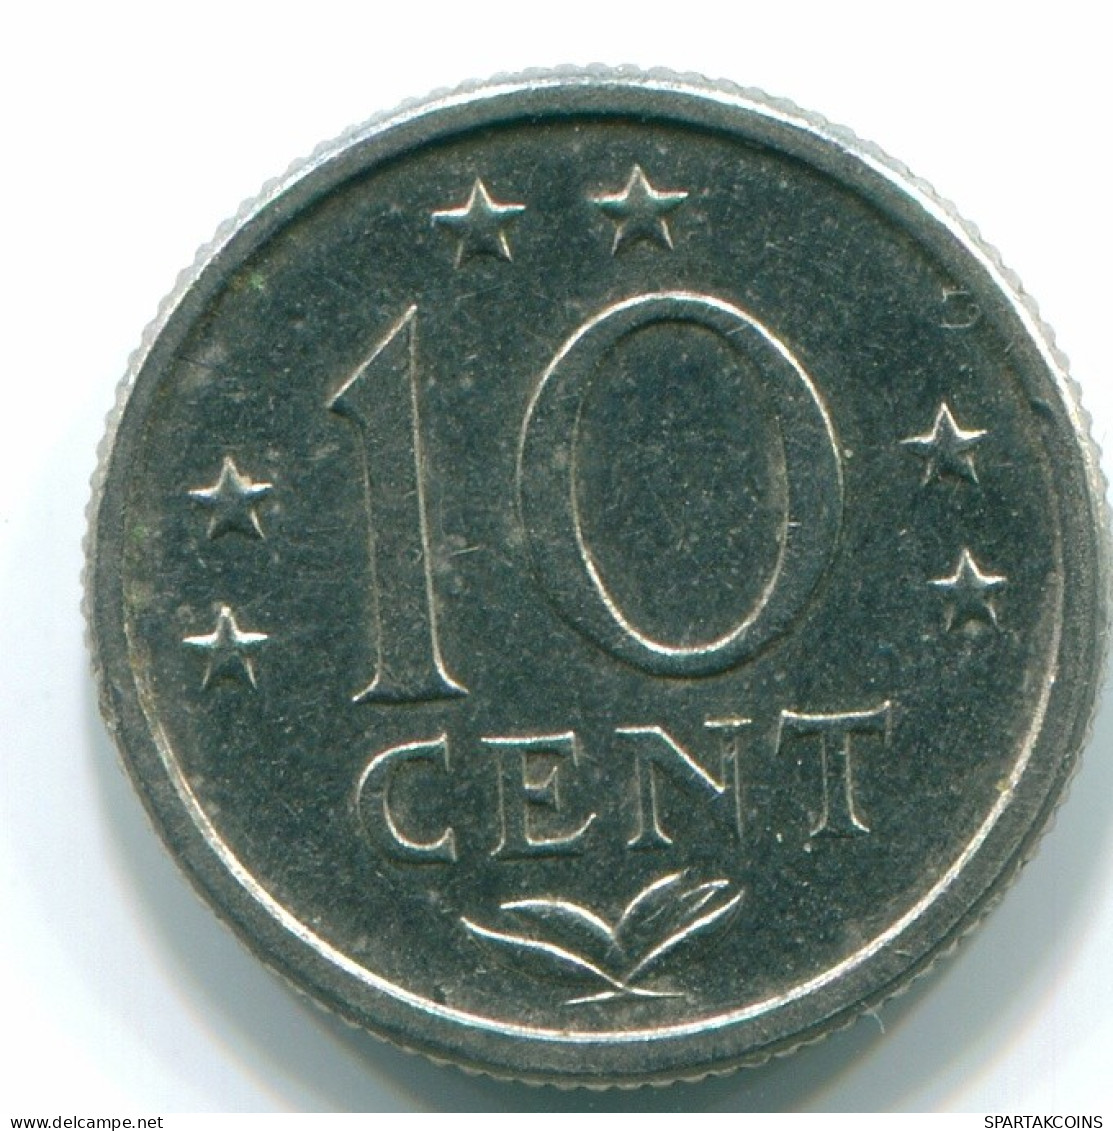 10 CENTS 1979 NIEDERLÄNDISCHE ANTILLEN Nickel Koloniale Münze #S13609.D.A - Niederländische Antillen